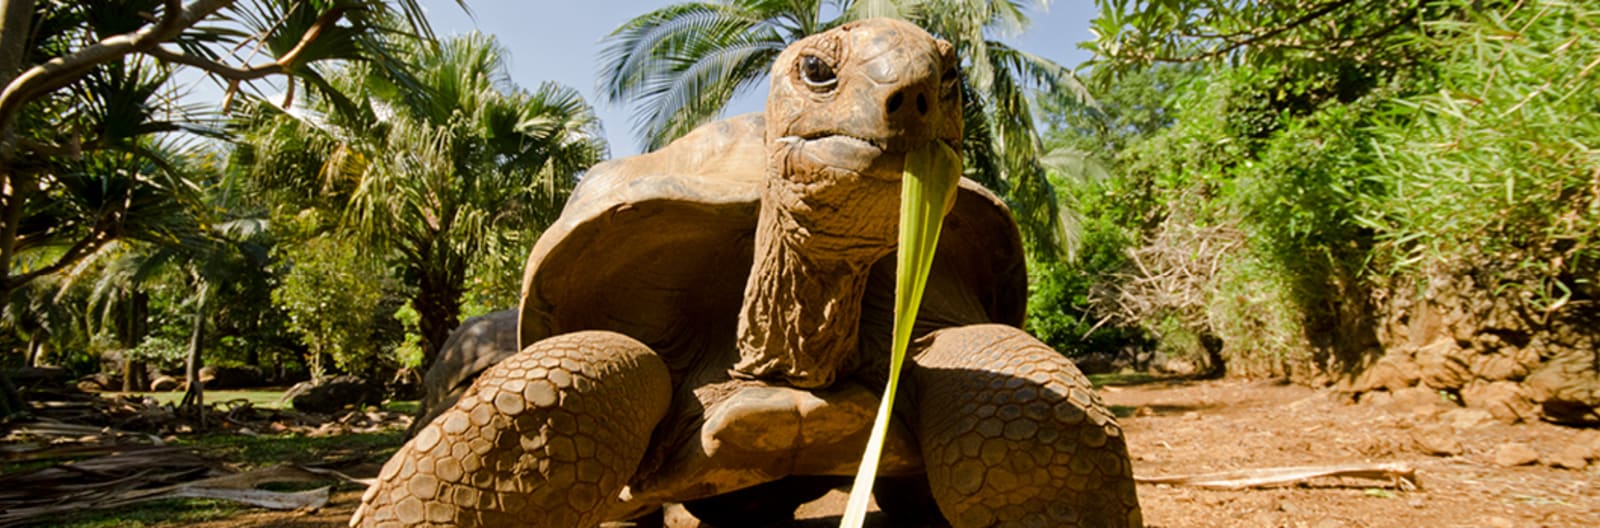 tortoise in Mauritius 